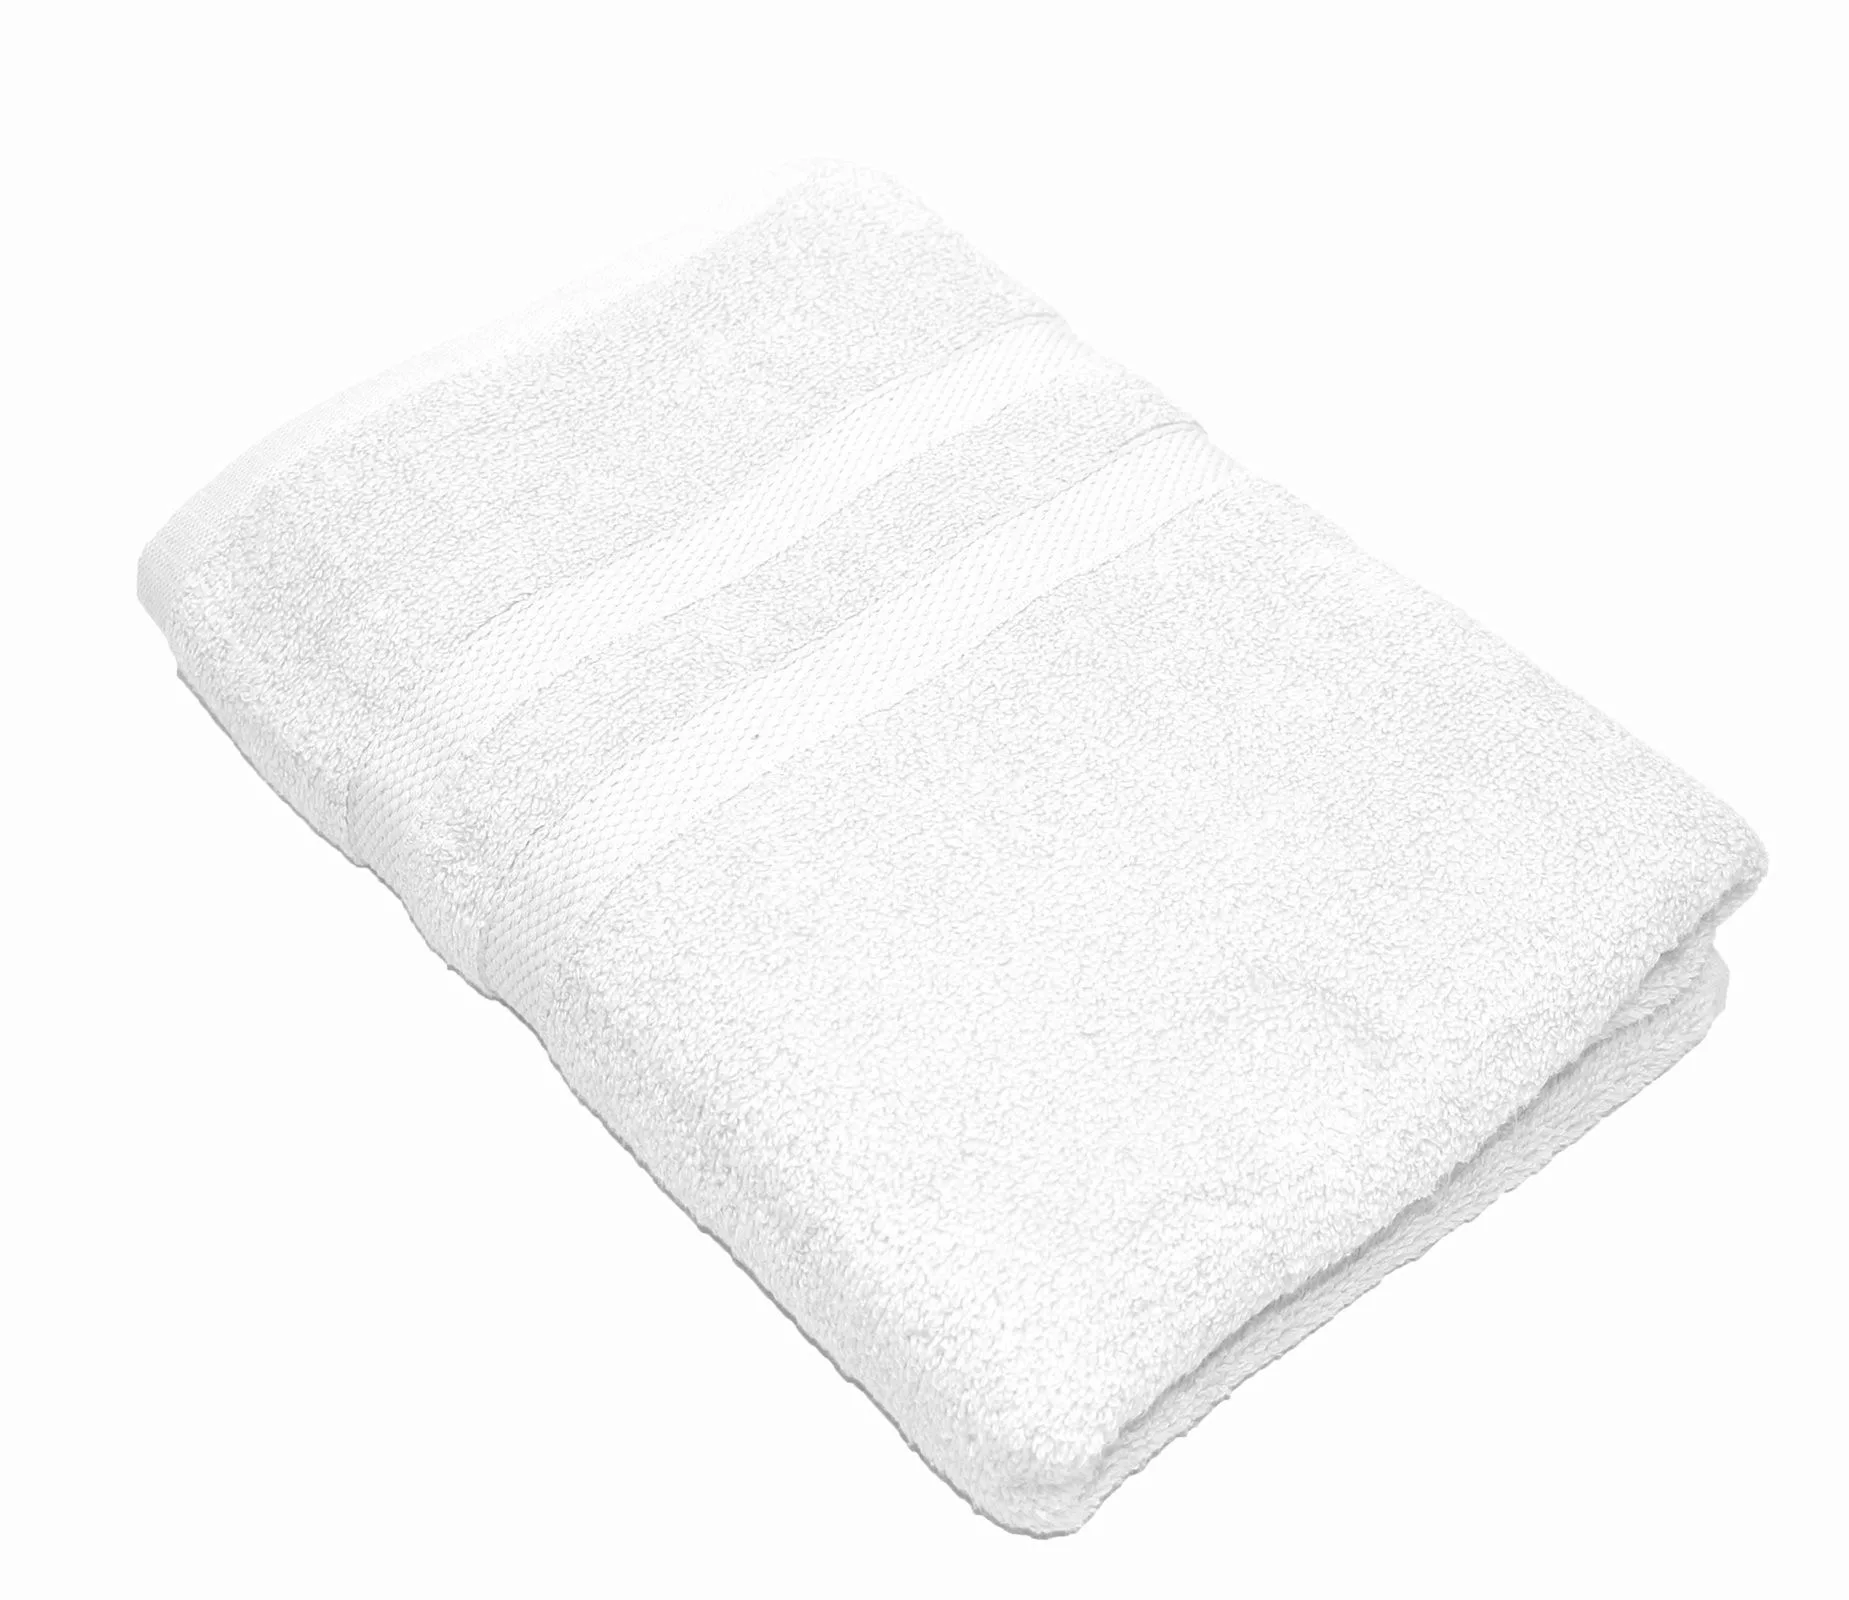 Handtuch Serie P.K. Soft Cotton 100% Baumwolle-weiß-4 er Pack Handtuch 50x1 günstig online kaufen